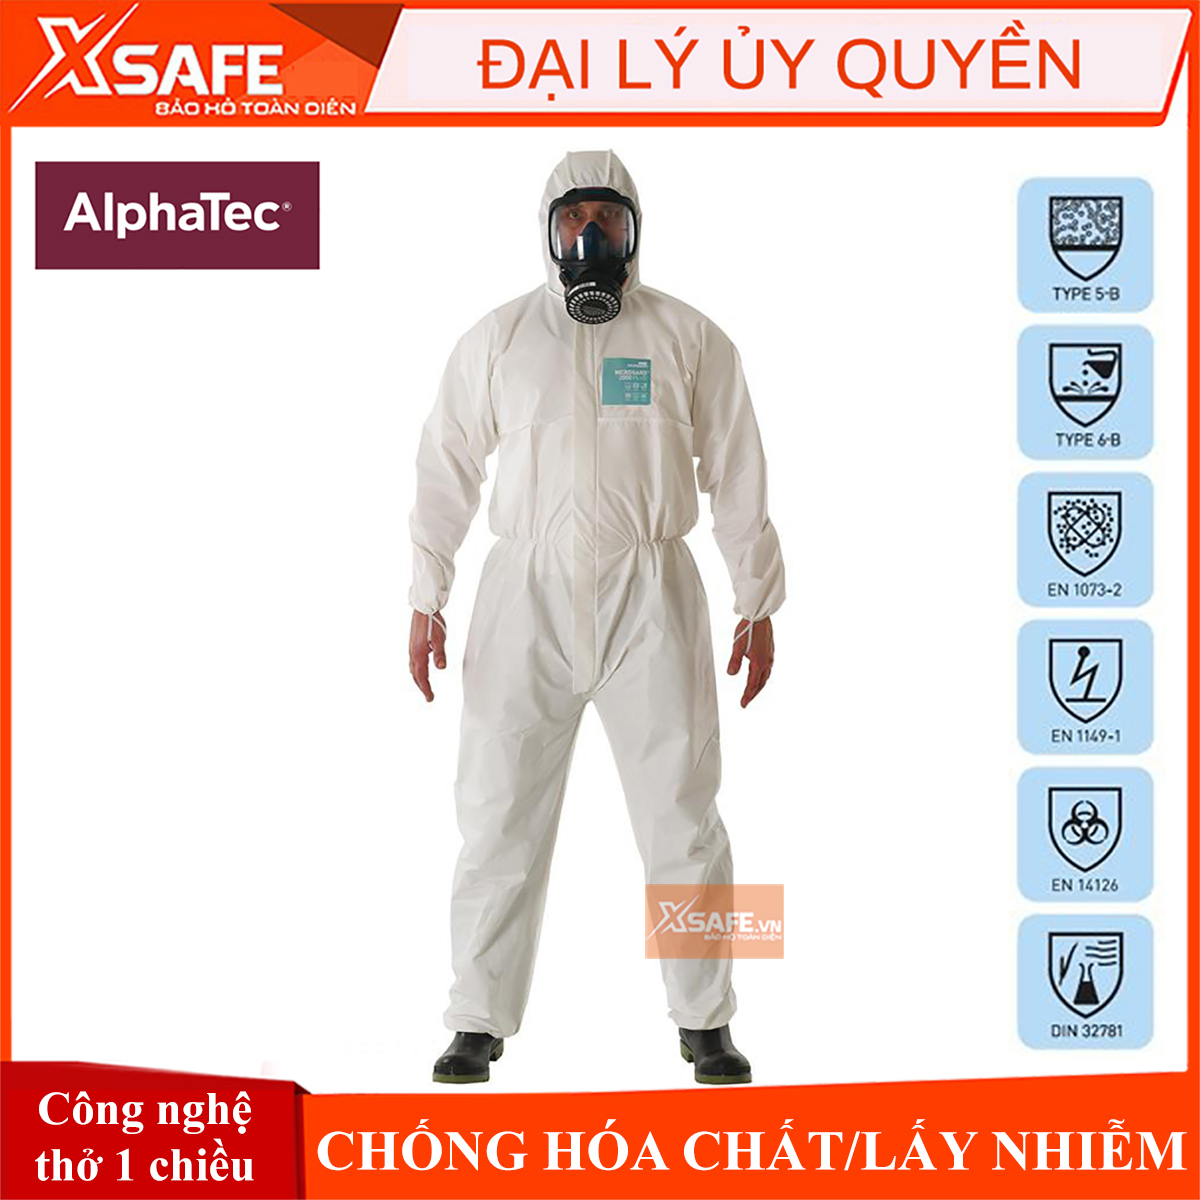 Quần áo chống hóa chất phòng dịch Alphatec 2000 Model 111 (Microgard 2000) Chống hóa chất - Chống lấy nhiễm cấp độ 4 ISO Type 5 6